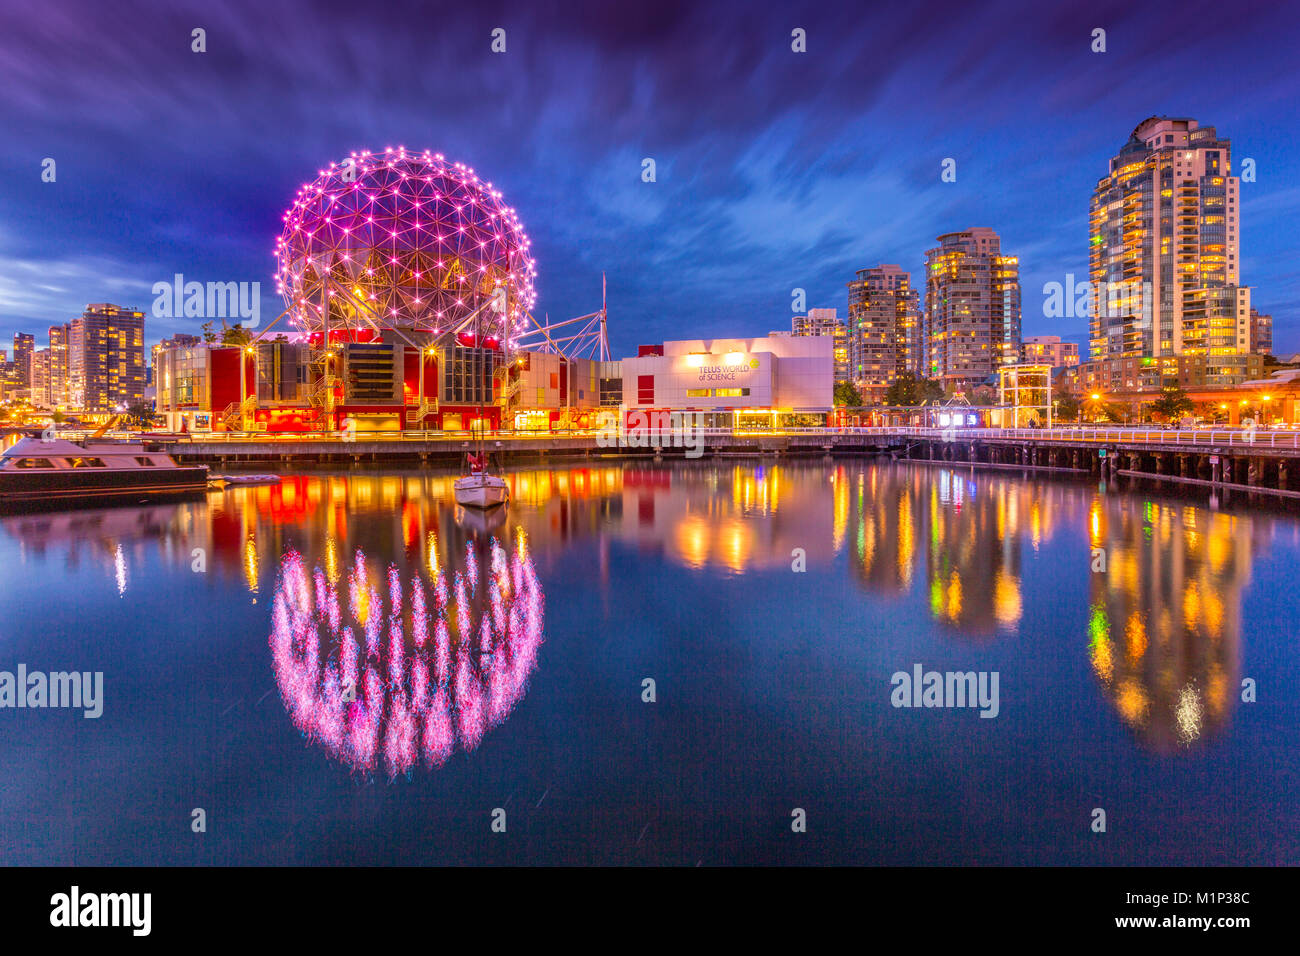 Vista de False Creek y Vancouver skyline, incluido el mundo de la ciencia Dome al anochecer, Vancouver, British Columbia, Canadá, América del Norte Foto de stock